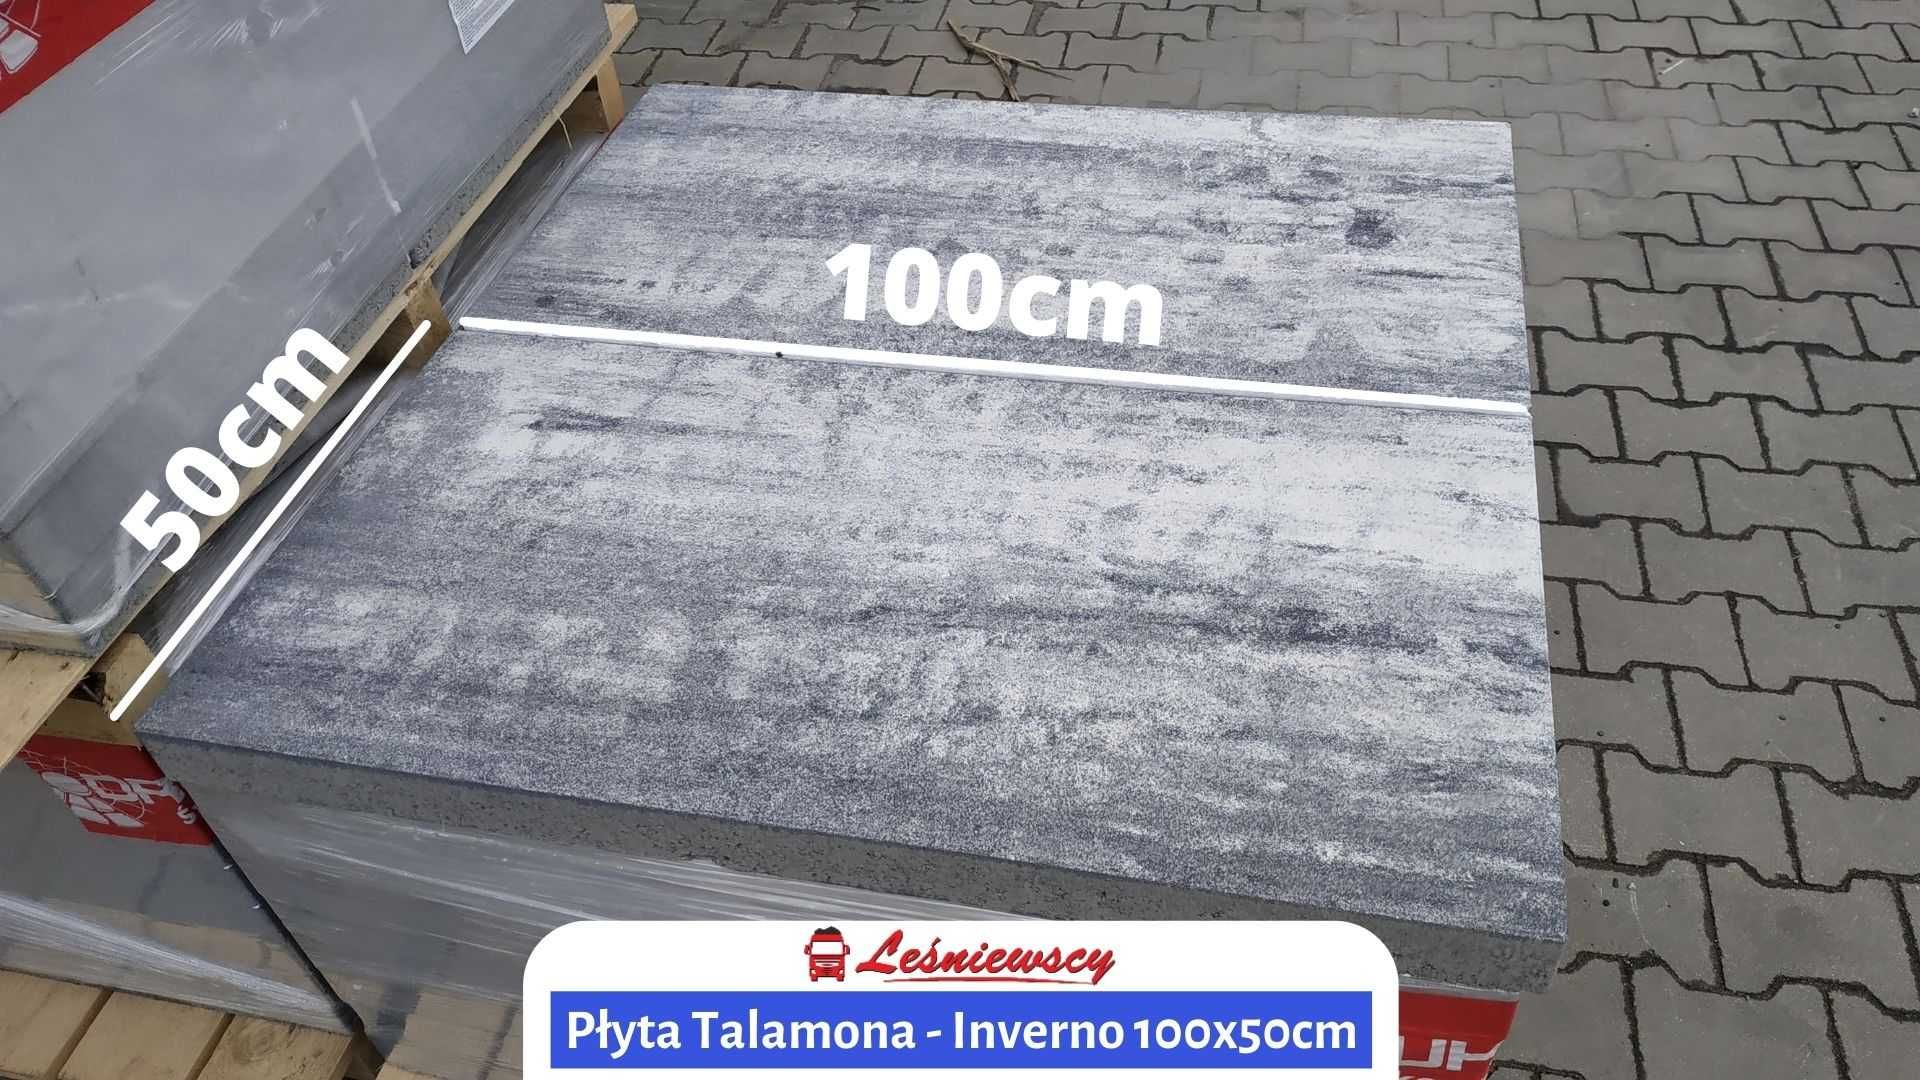 NOWOŚĆ! Płyta betonowa DUŻY FORMAT 100x50cm Drogbruk-Talamona na taras